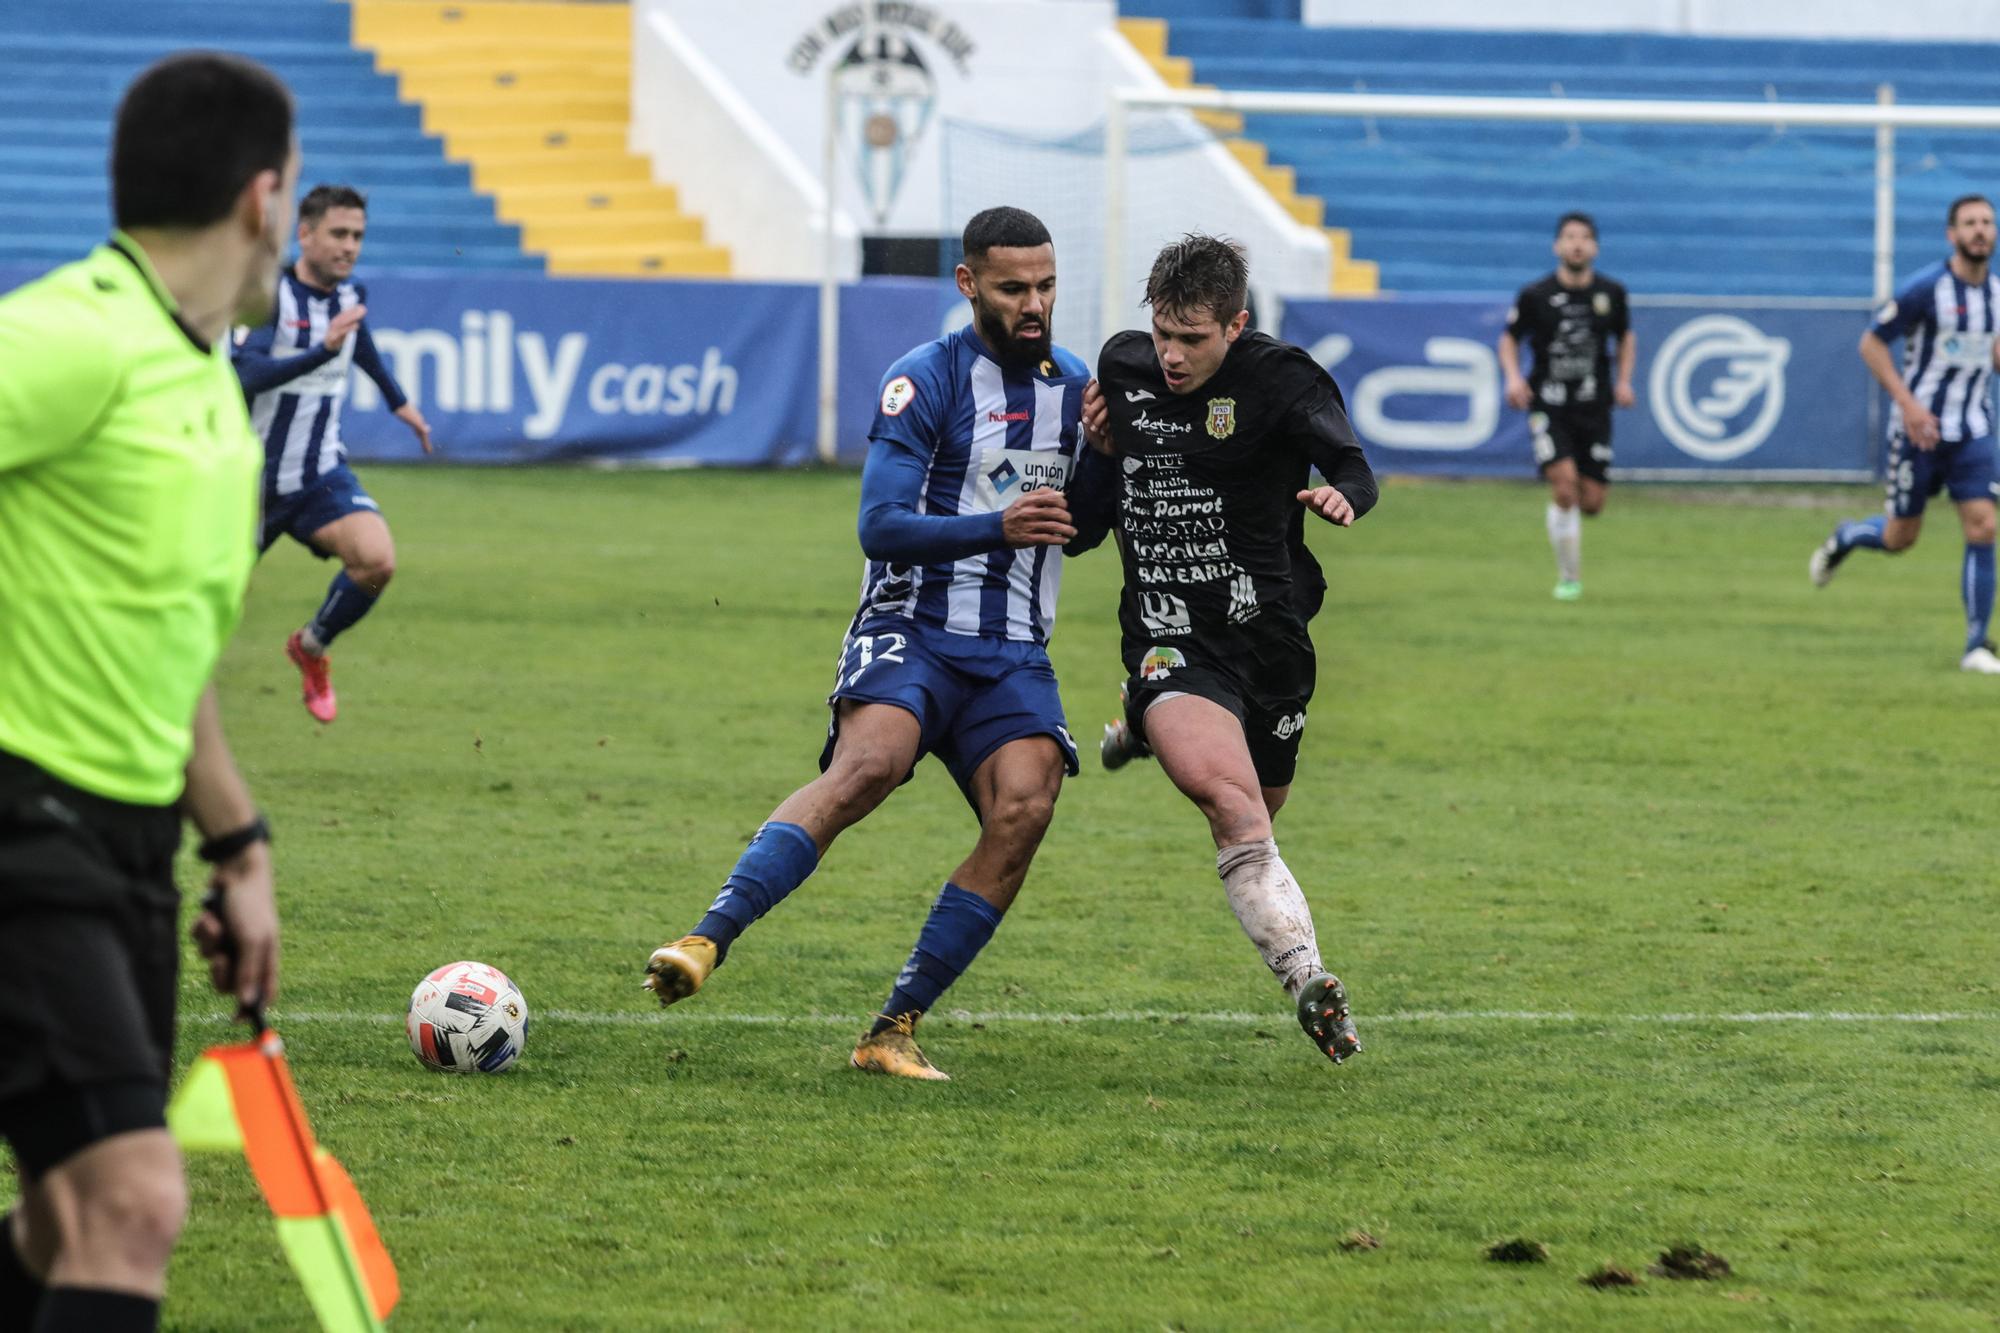 Alcoyano - Peña Deportiva: Las imágenes del partido